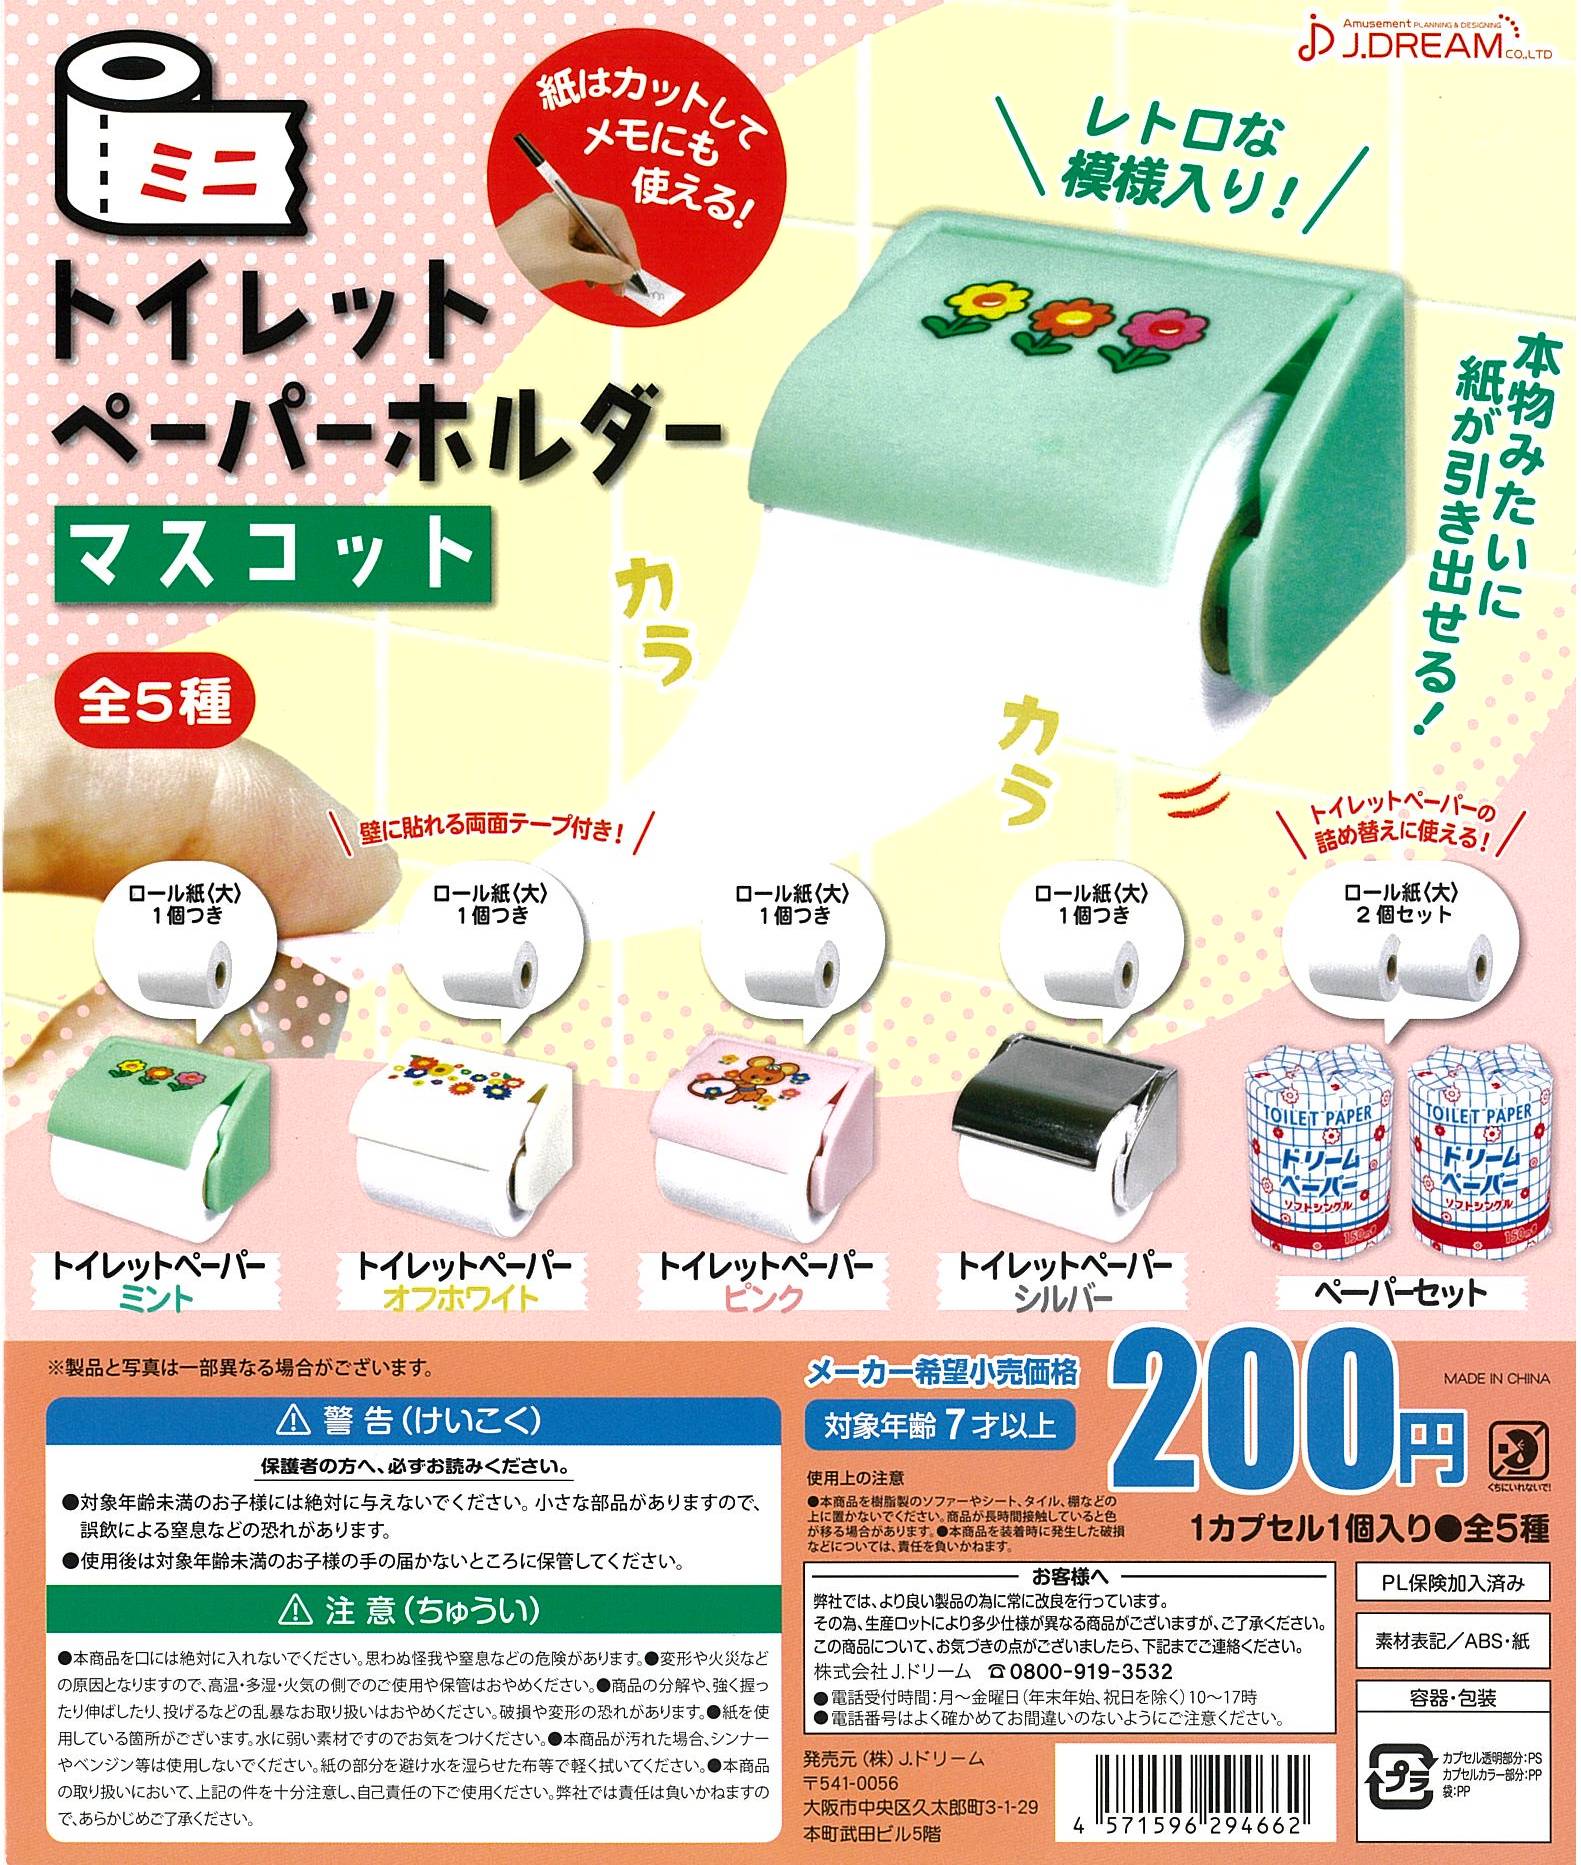 CP2566 Mini Toilet Paper Holder Mascot